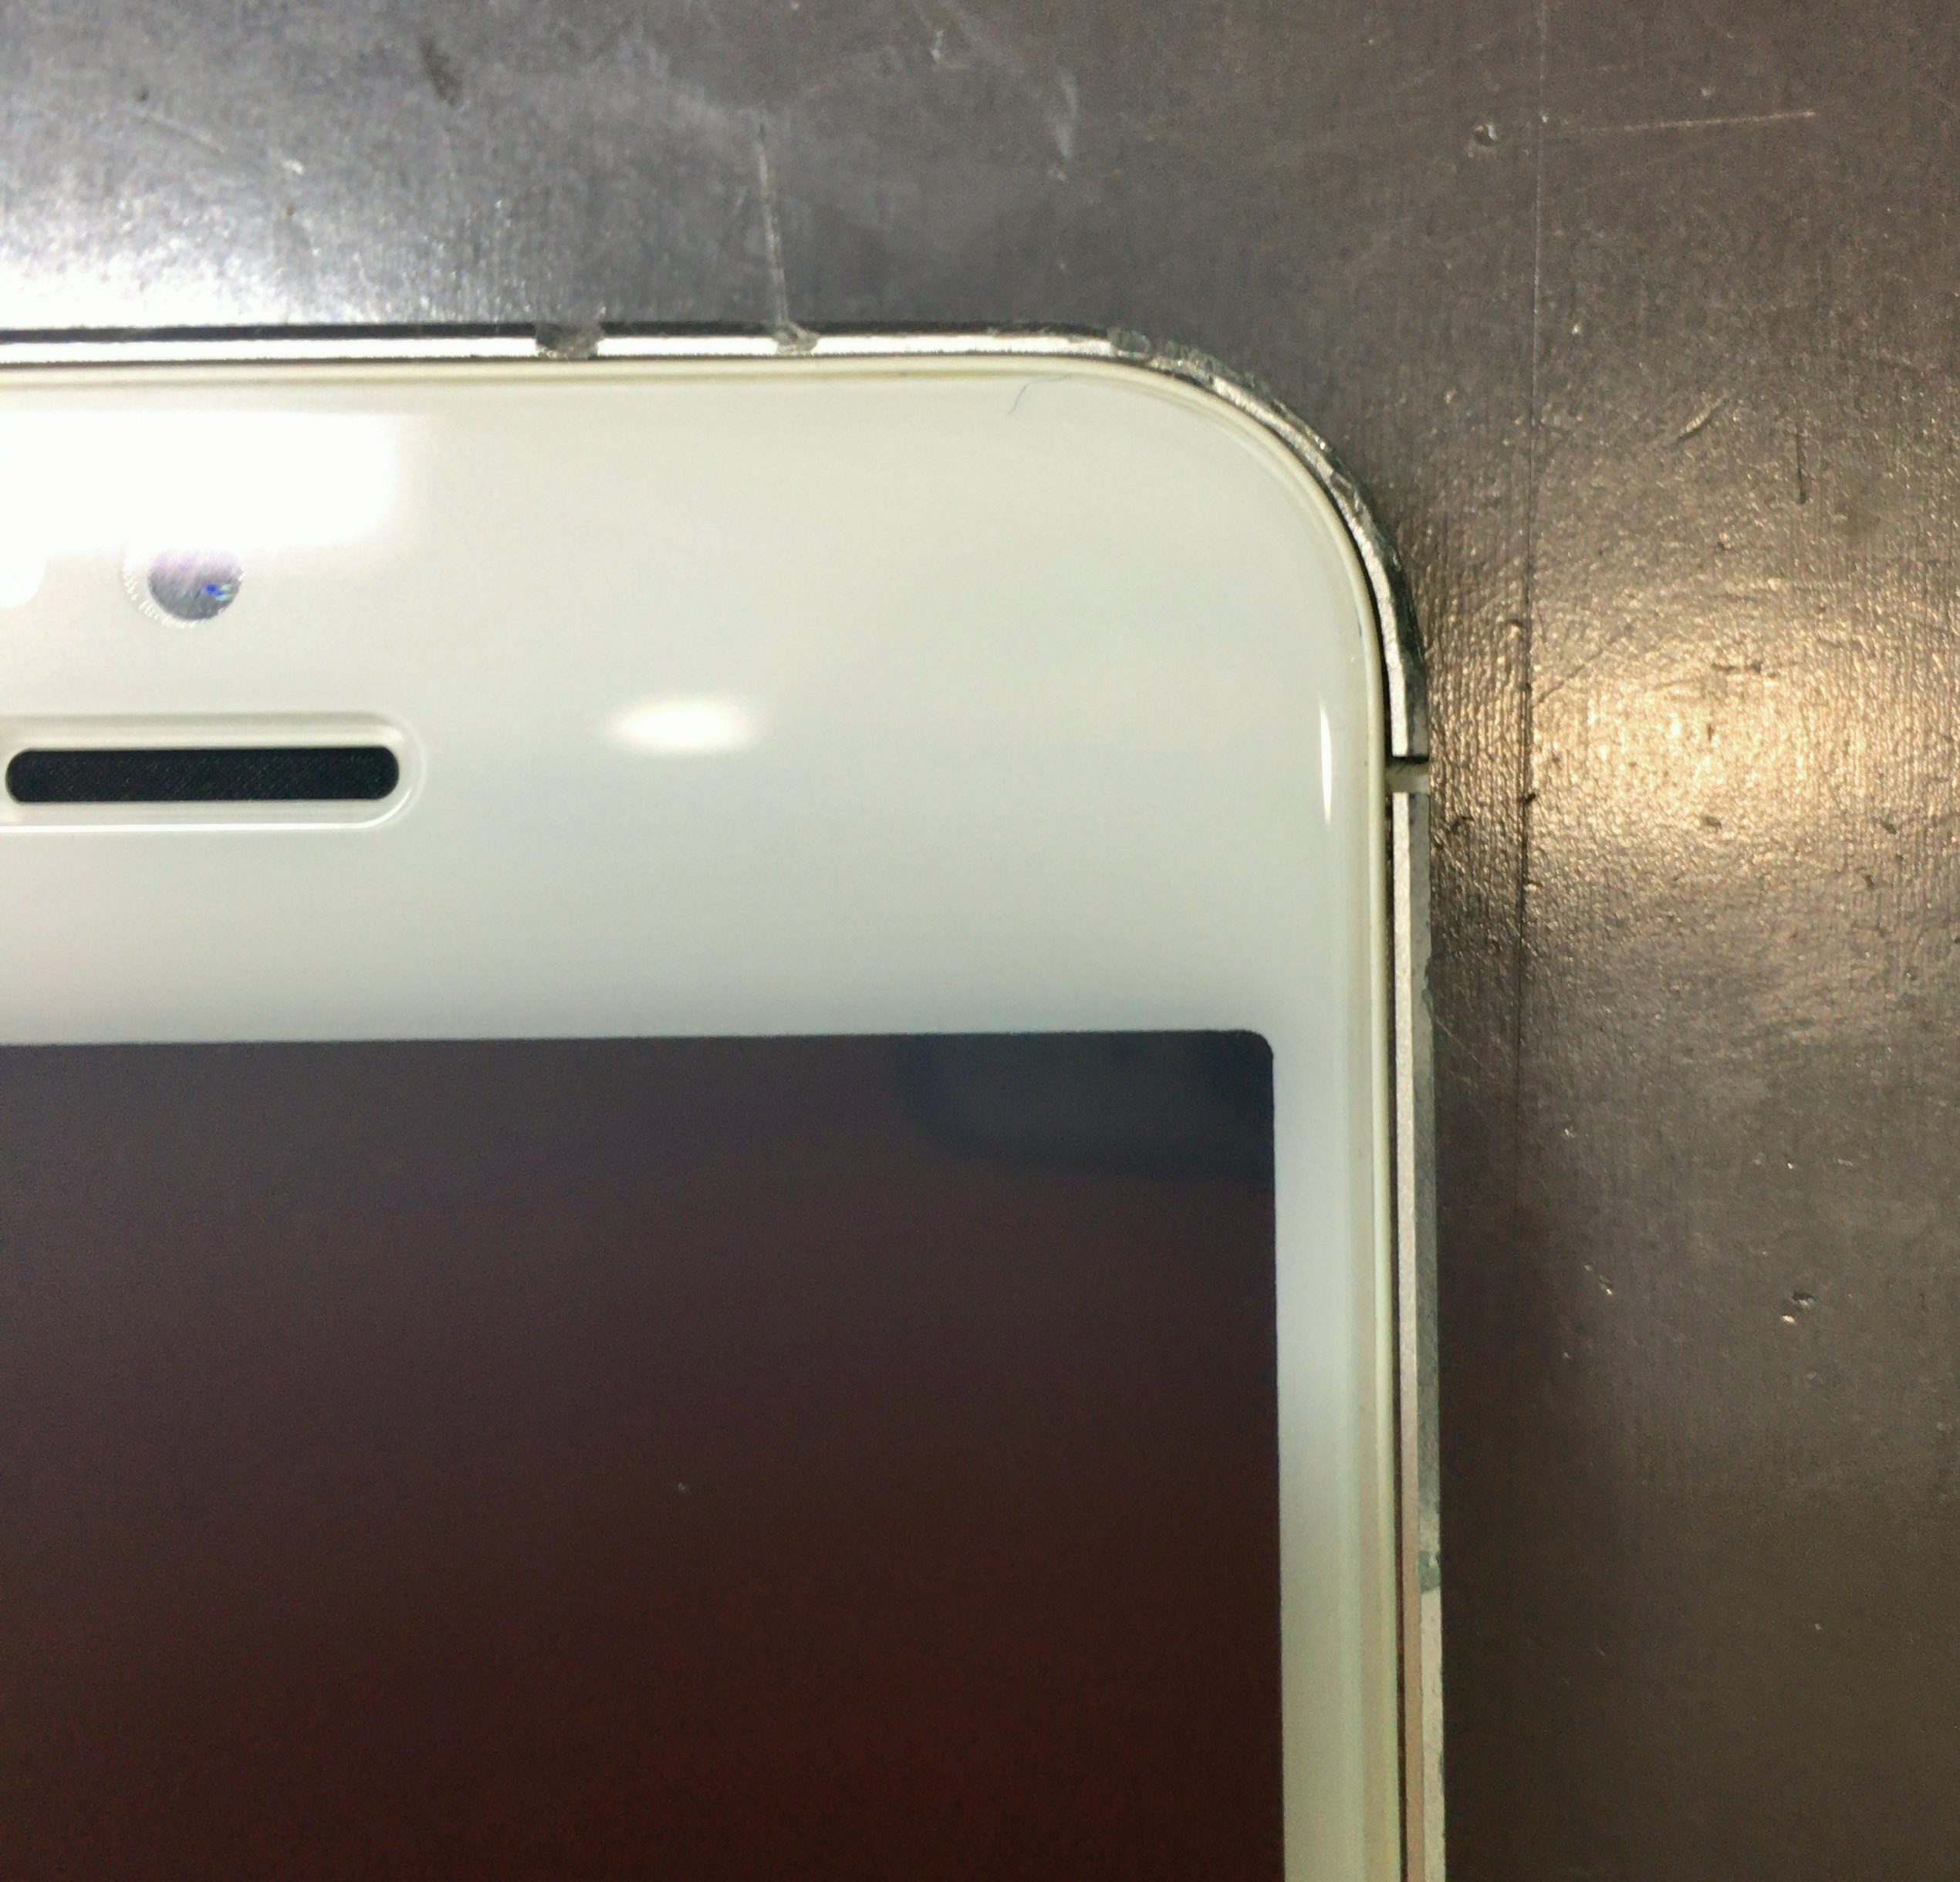 Iphone5sガラス割れ フレーム変形有 沖縄 Iphone修理 スマイルファクトリー